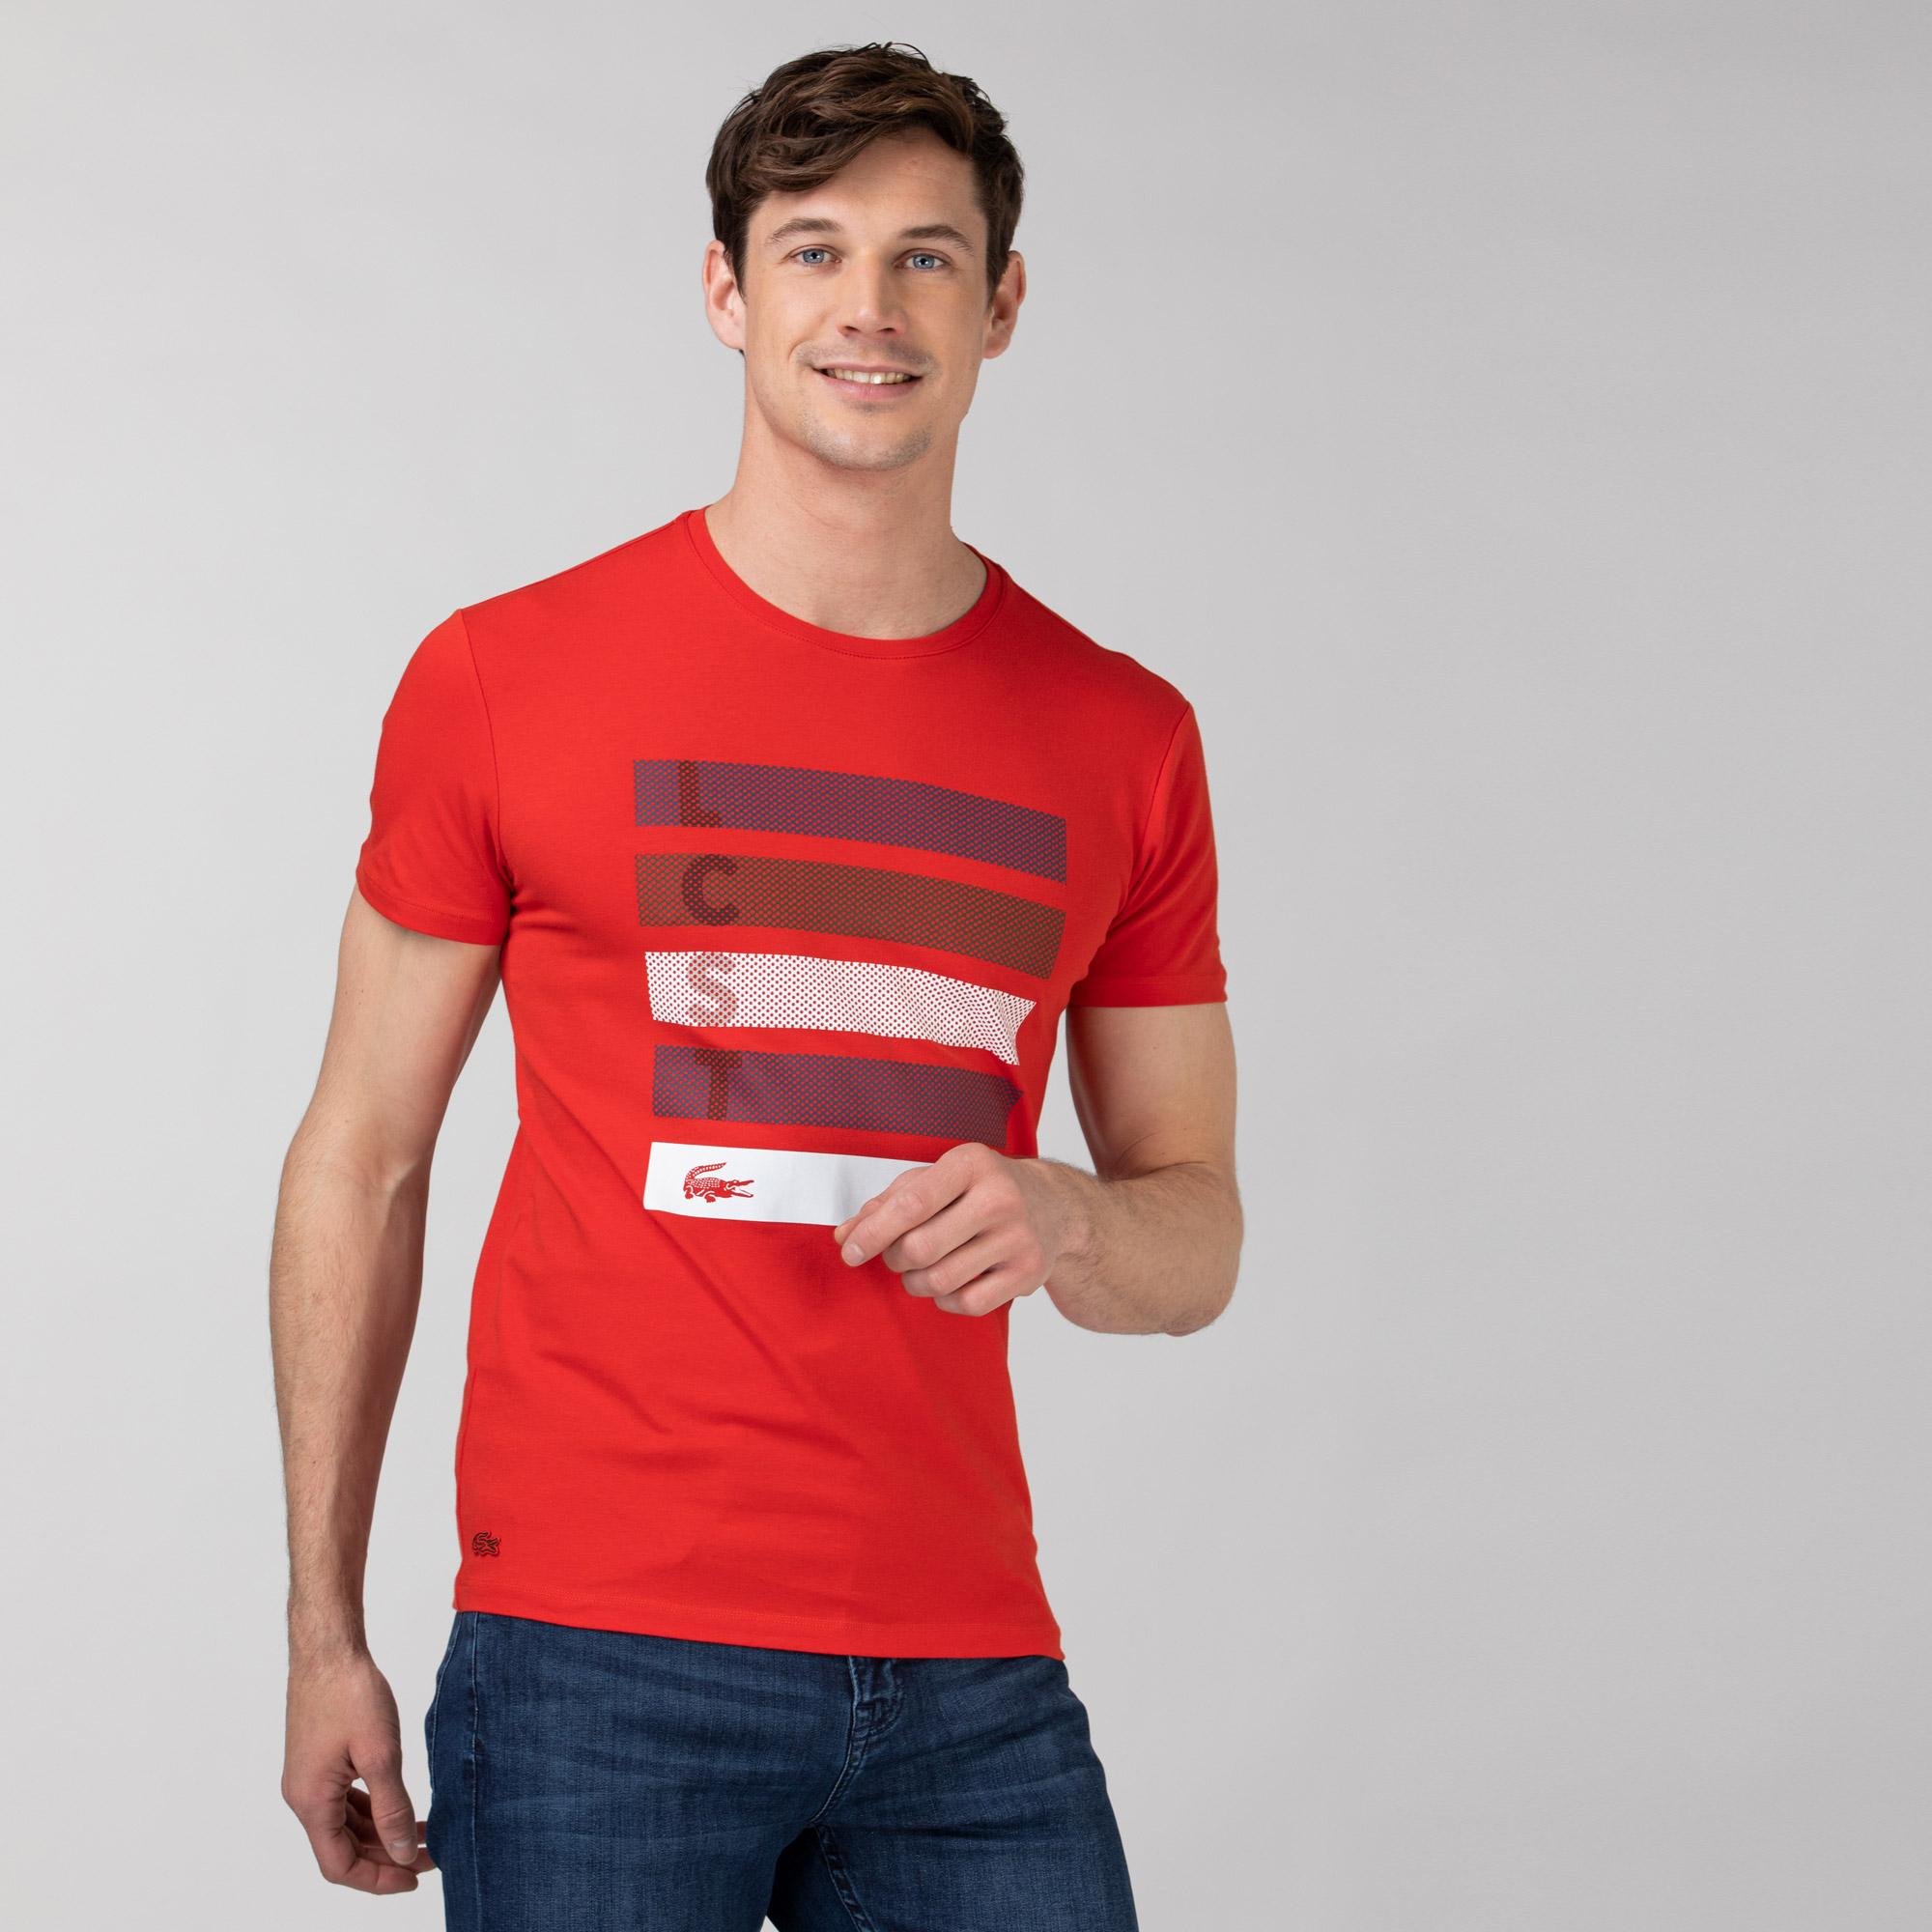 Lacoste Erkek Slim Fit Bisiklet Yaka Baskılı Kırmızı T-Shirt